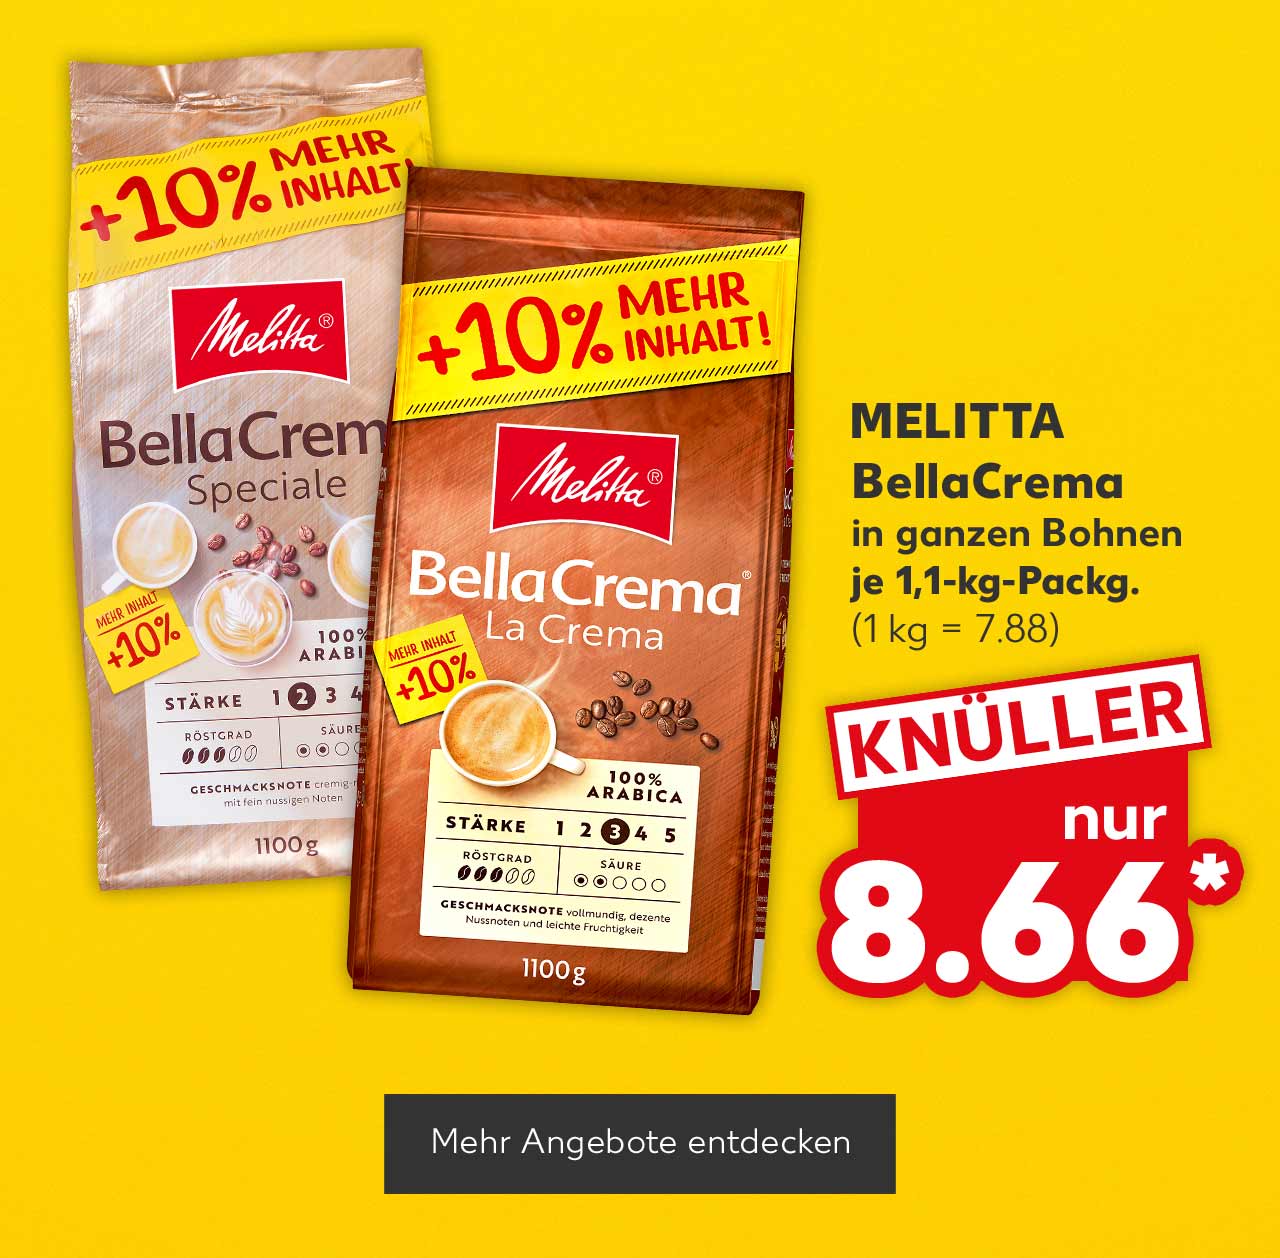 Melitta BellaCrema, in ganzen Bohnen, versch. Sorten, je 1,1-kg-Packg. für 8.66 Euro* (1 kg = 7.88); Button: Mehr Angebote entdecken